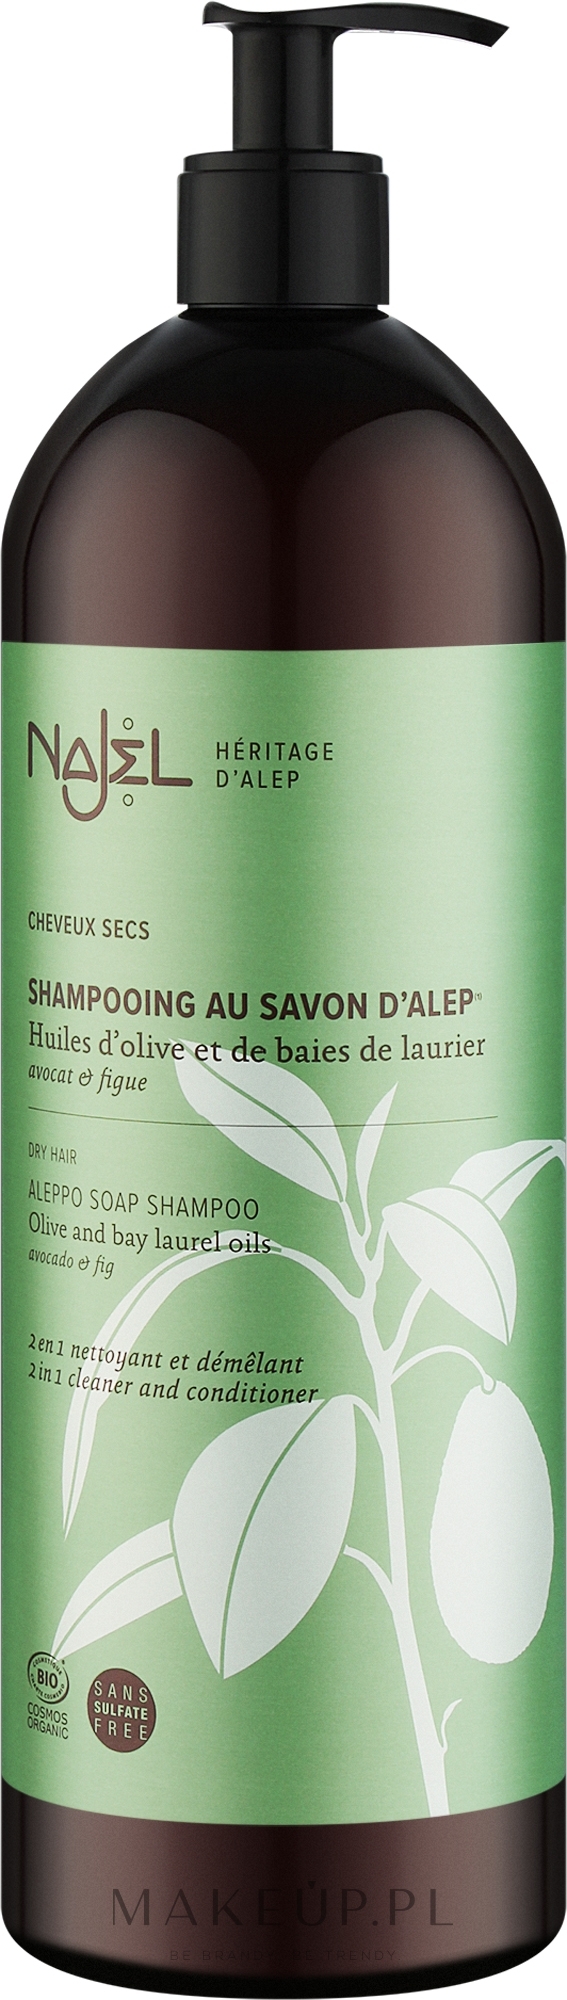 kosmetyki z aleppo szampon